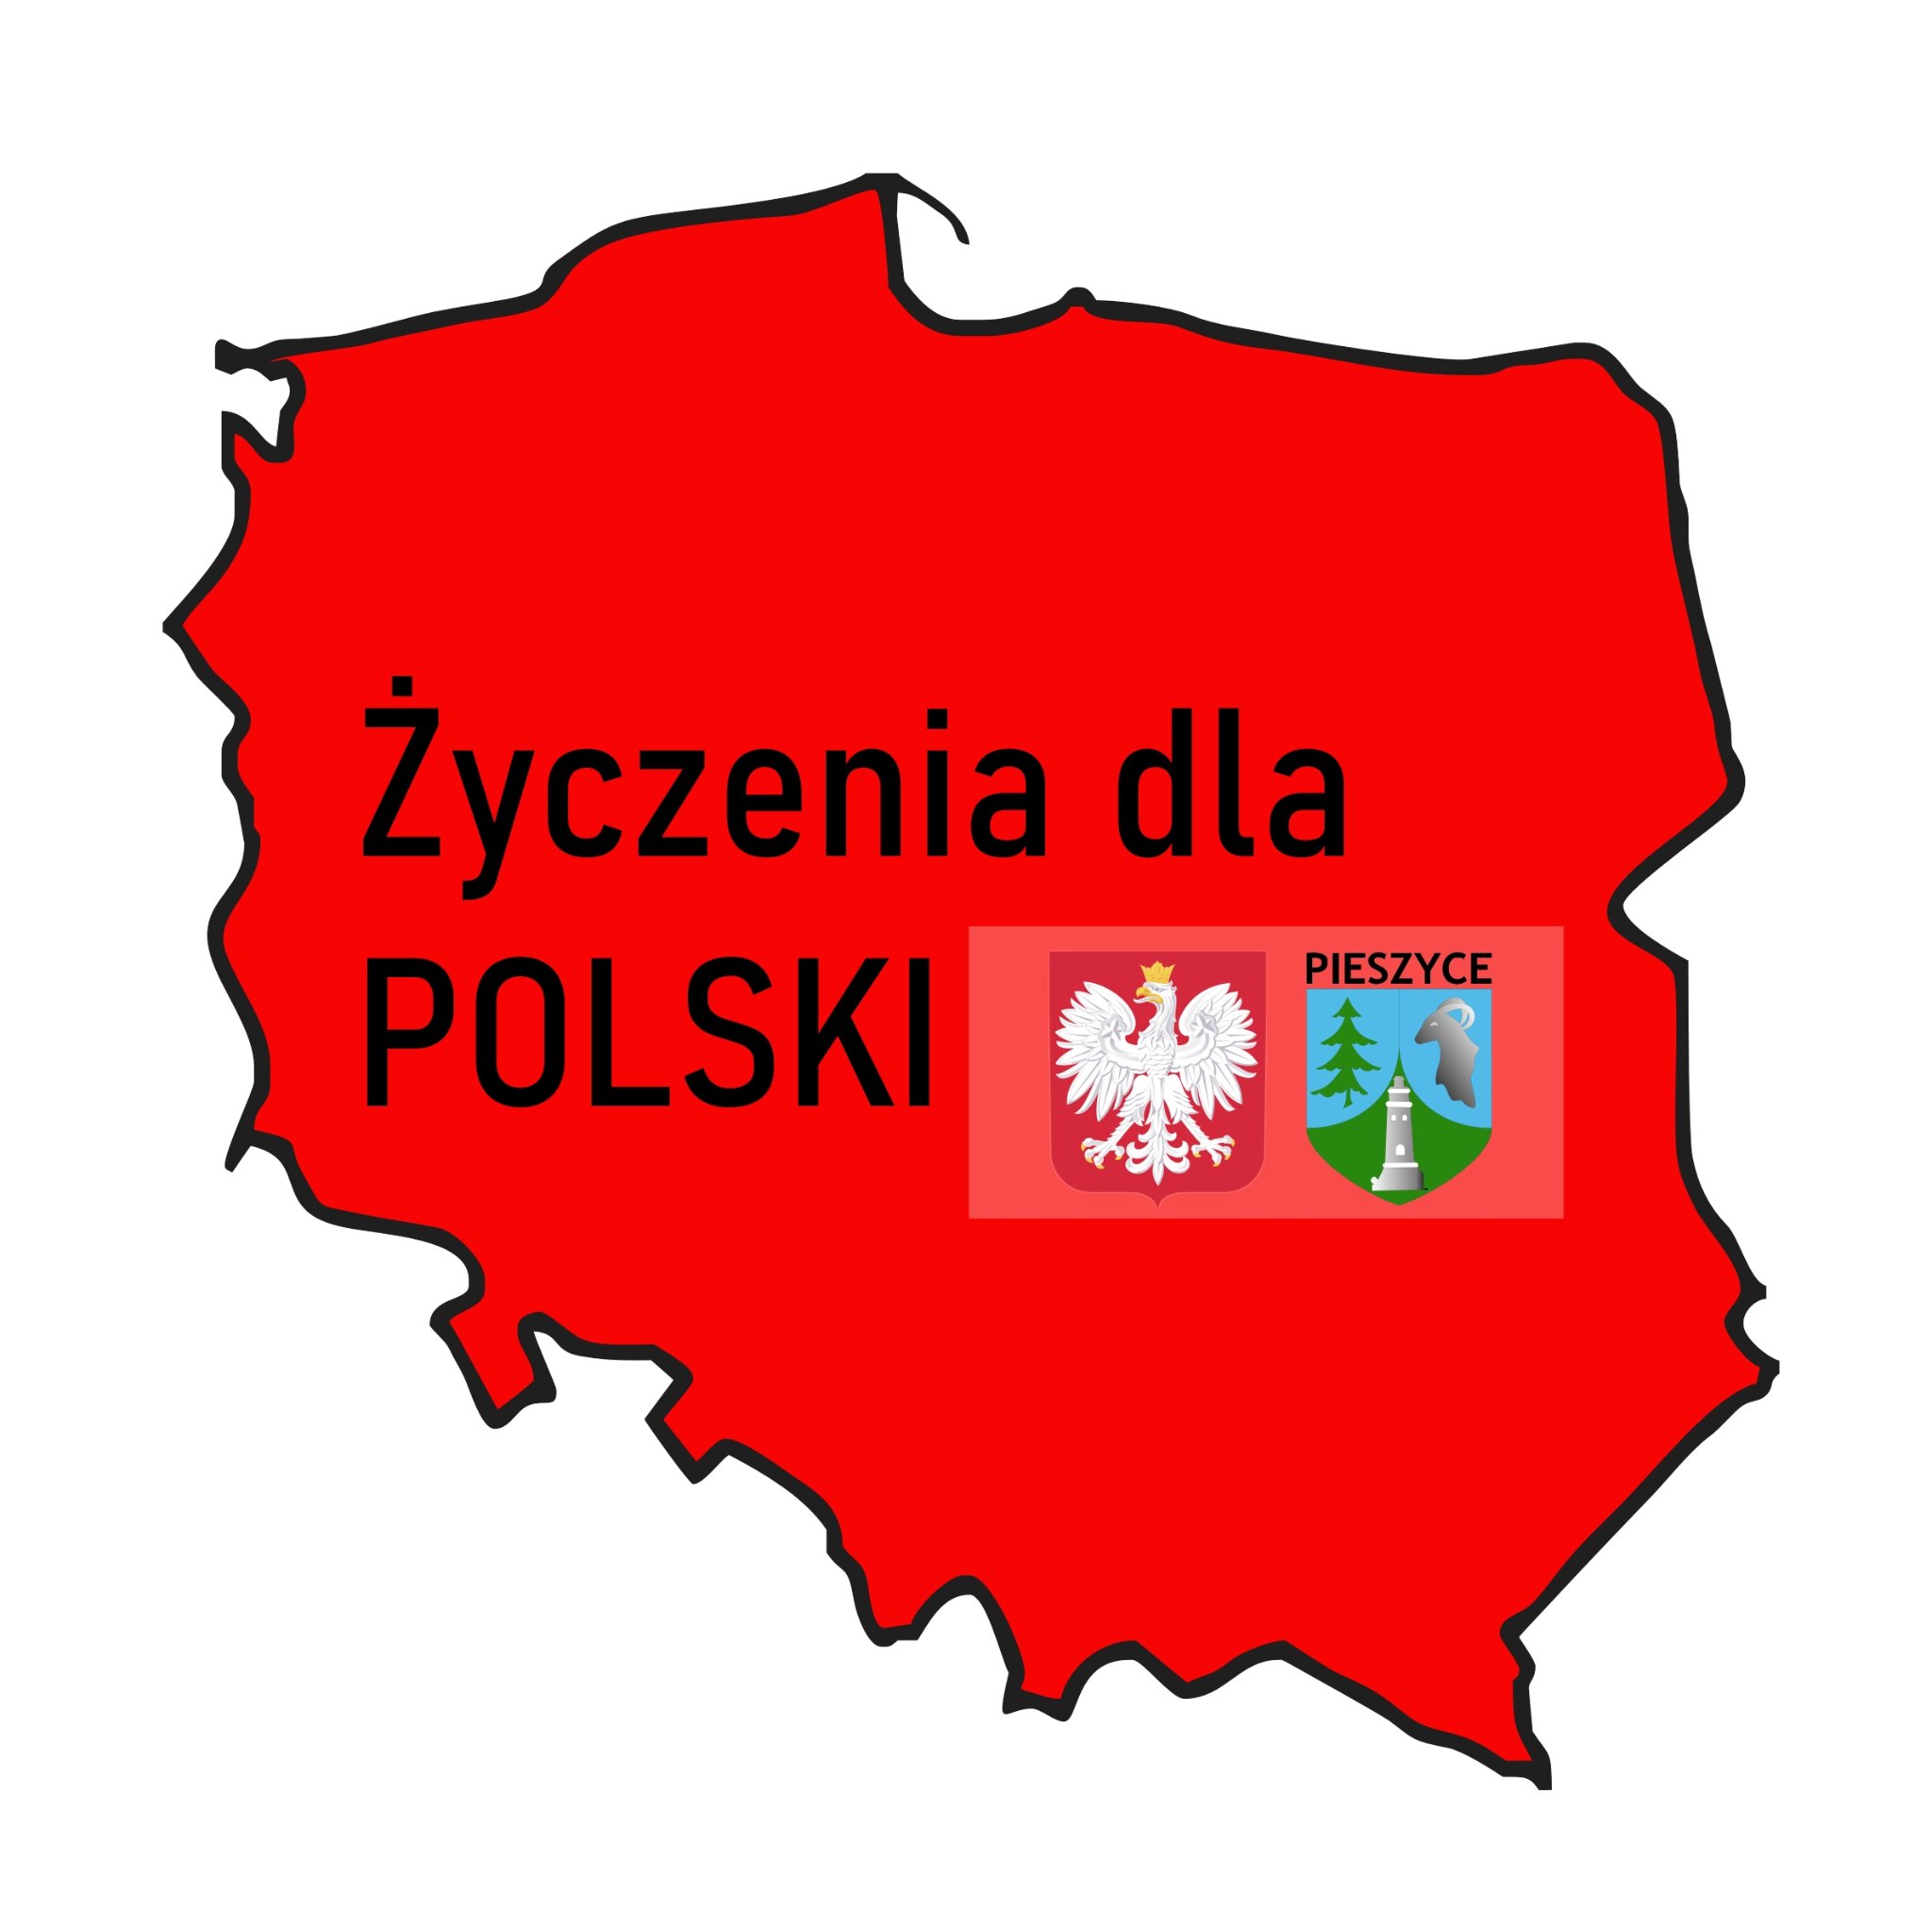 Złóż życzenia Polsce!